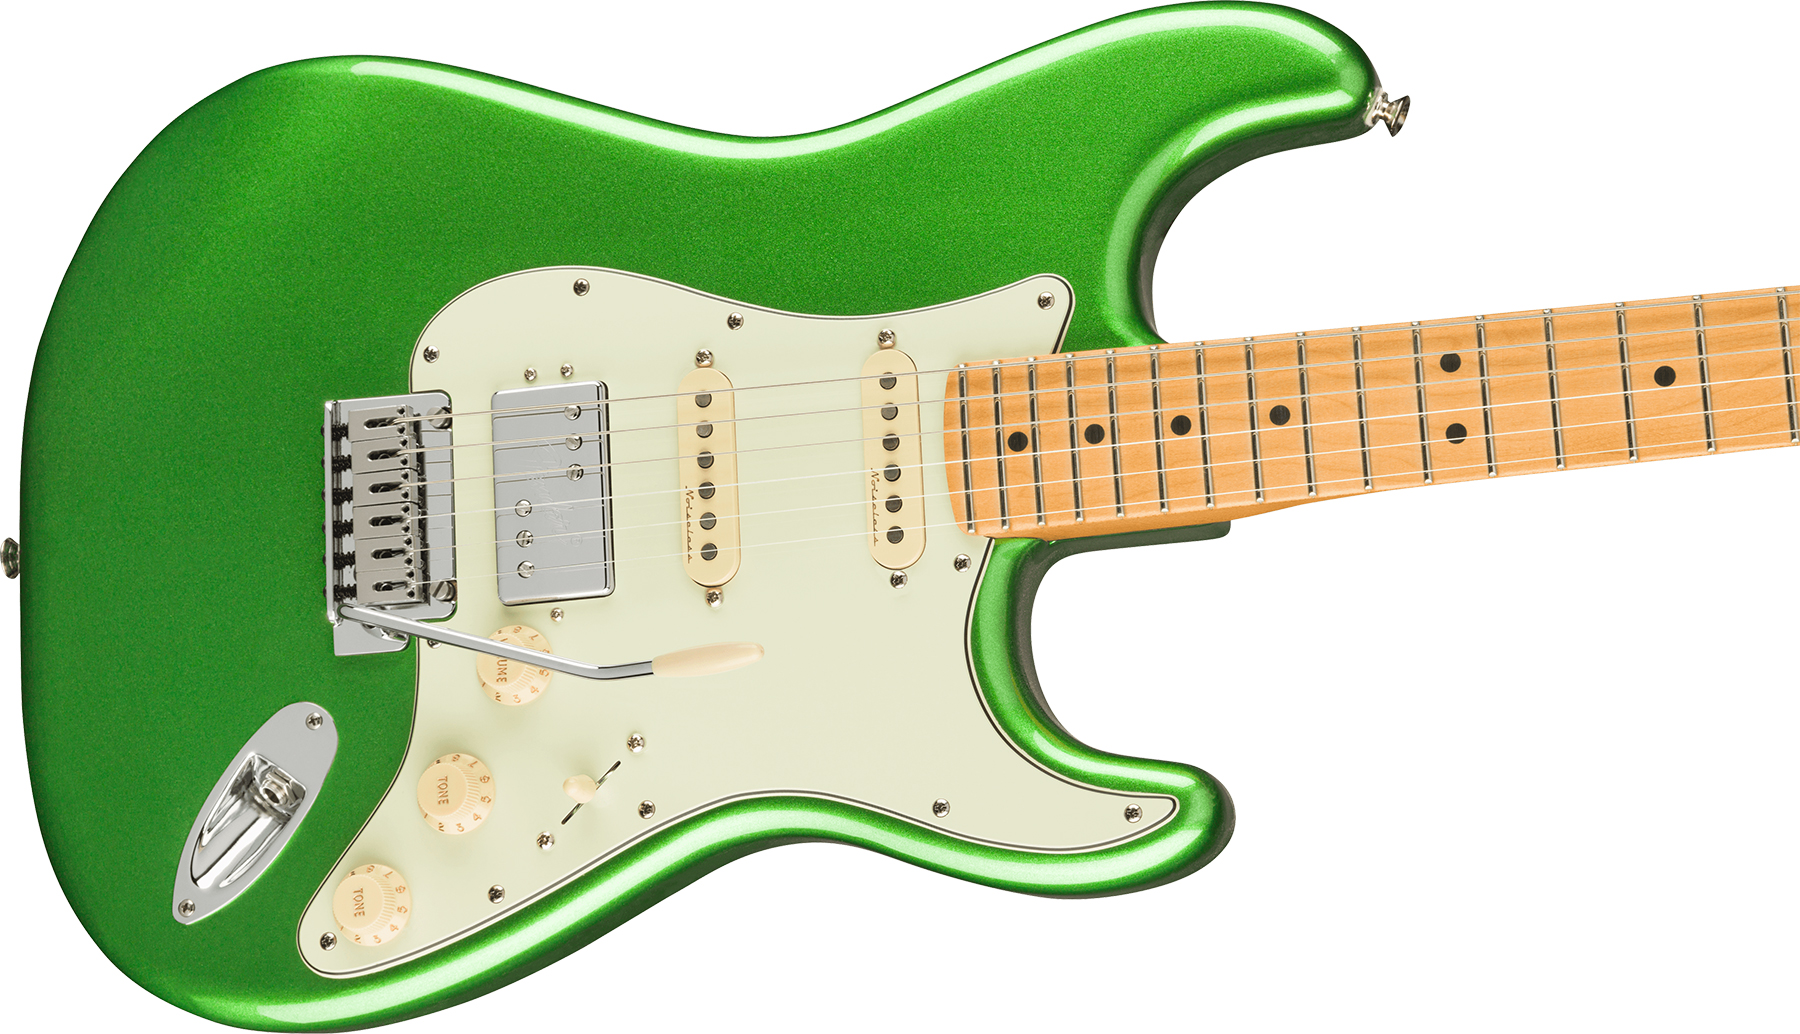 Fender Strat Player Plus Mex Hss Trem Mn - Cosmic Jade - Elektrische gitaar in Str-vorm - Variation 2